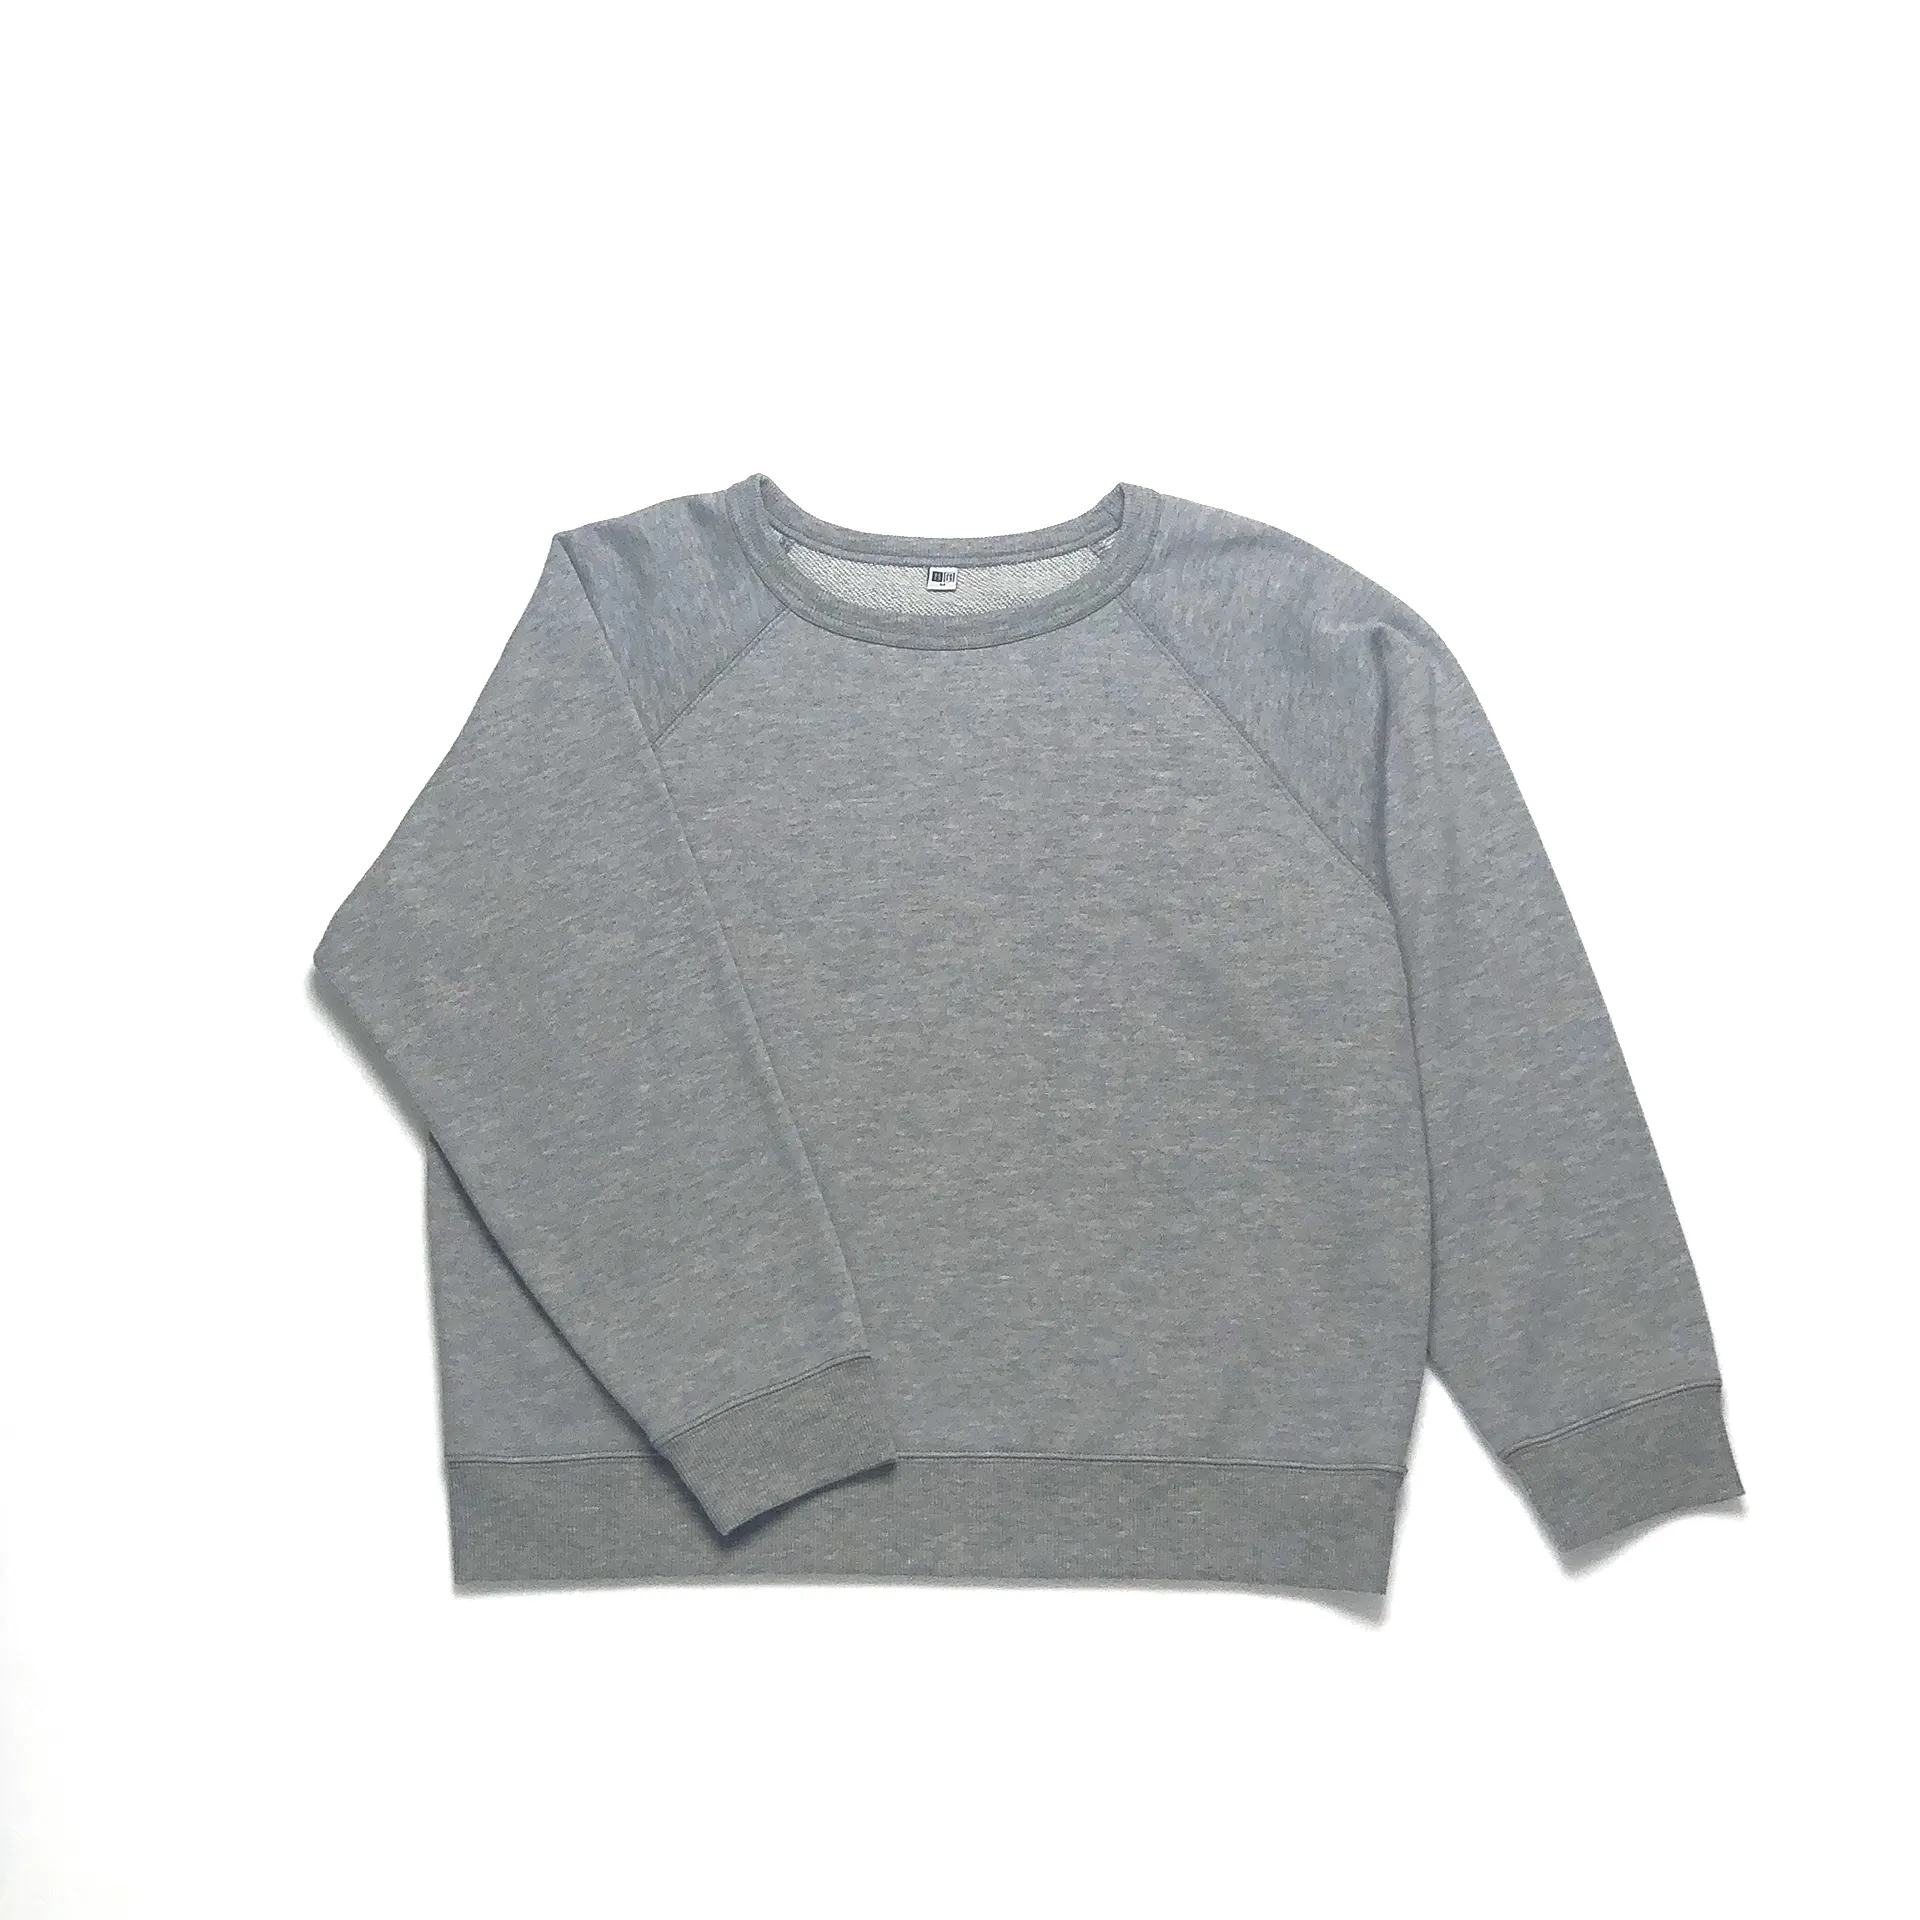 Hot Sale Gute Qualität Unisex Tops 100% Baumwolle Bio-Baumwolle Anpassbares Sweatshirt mit Rundhals ausschnitt